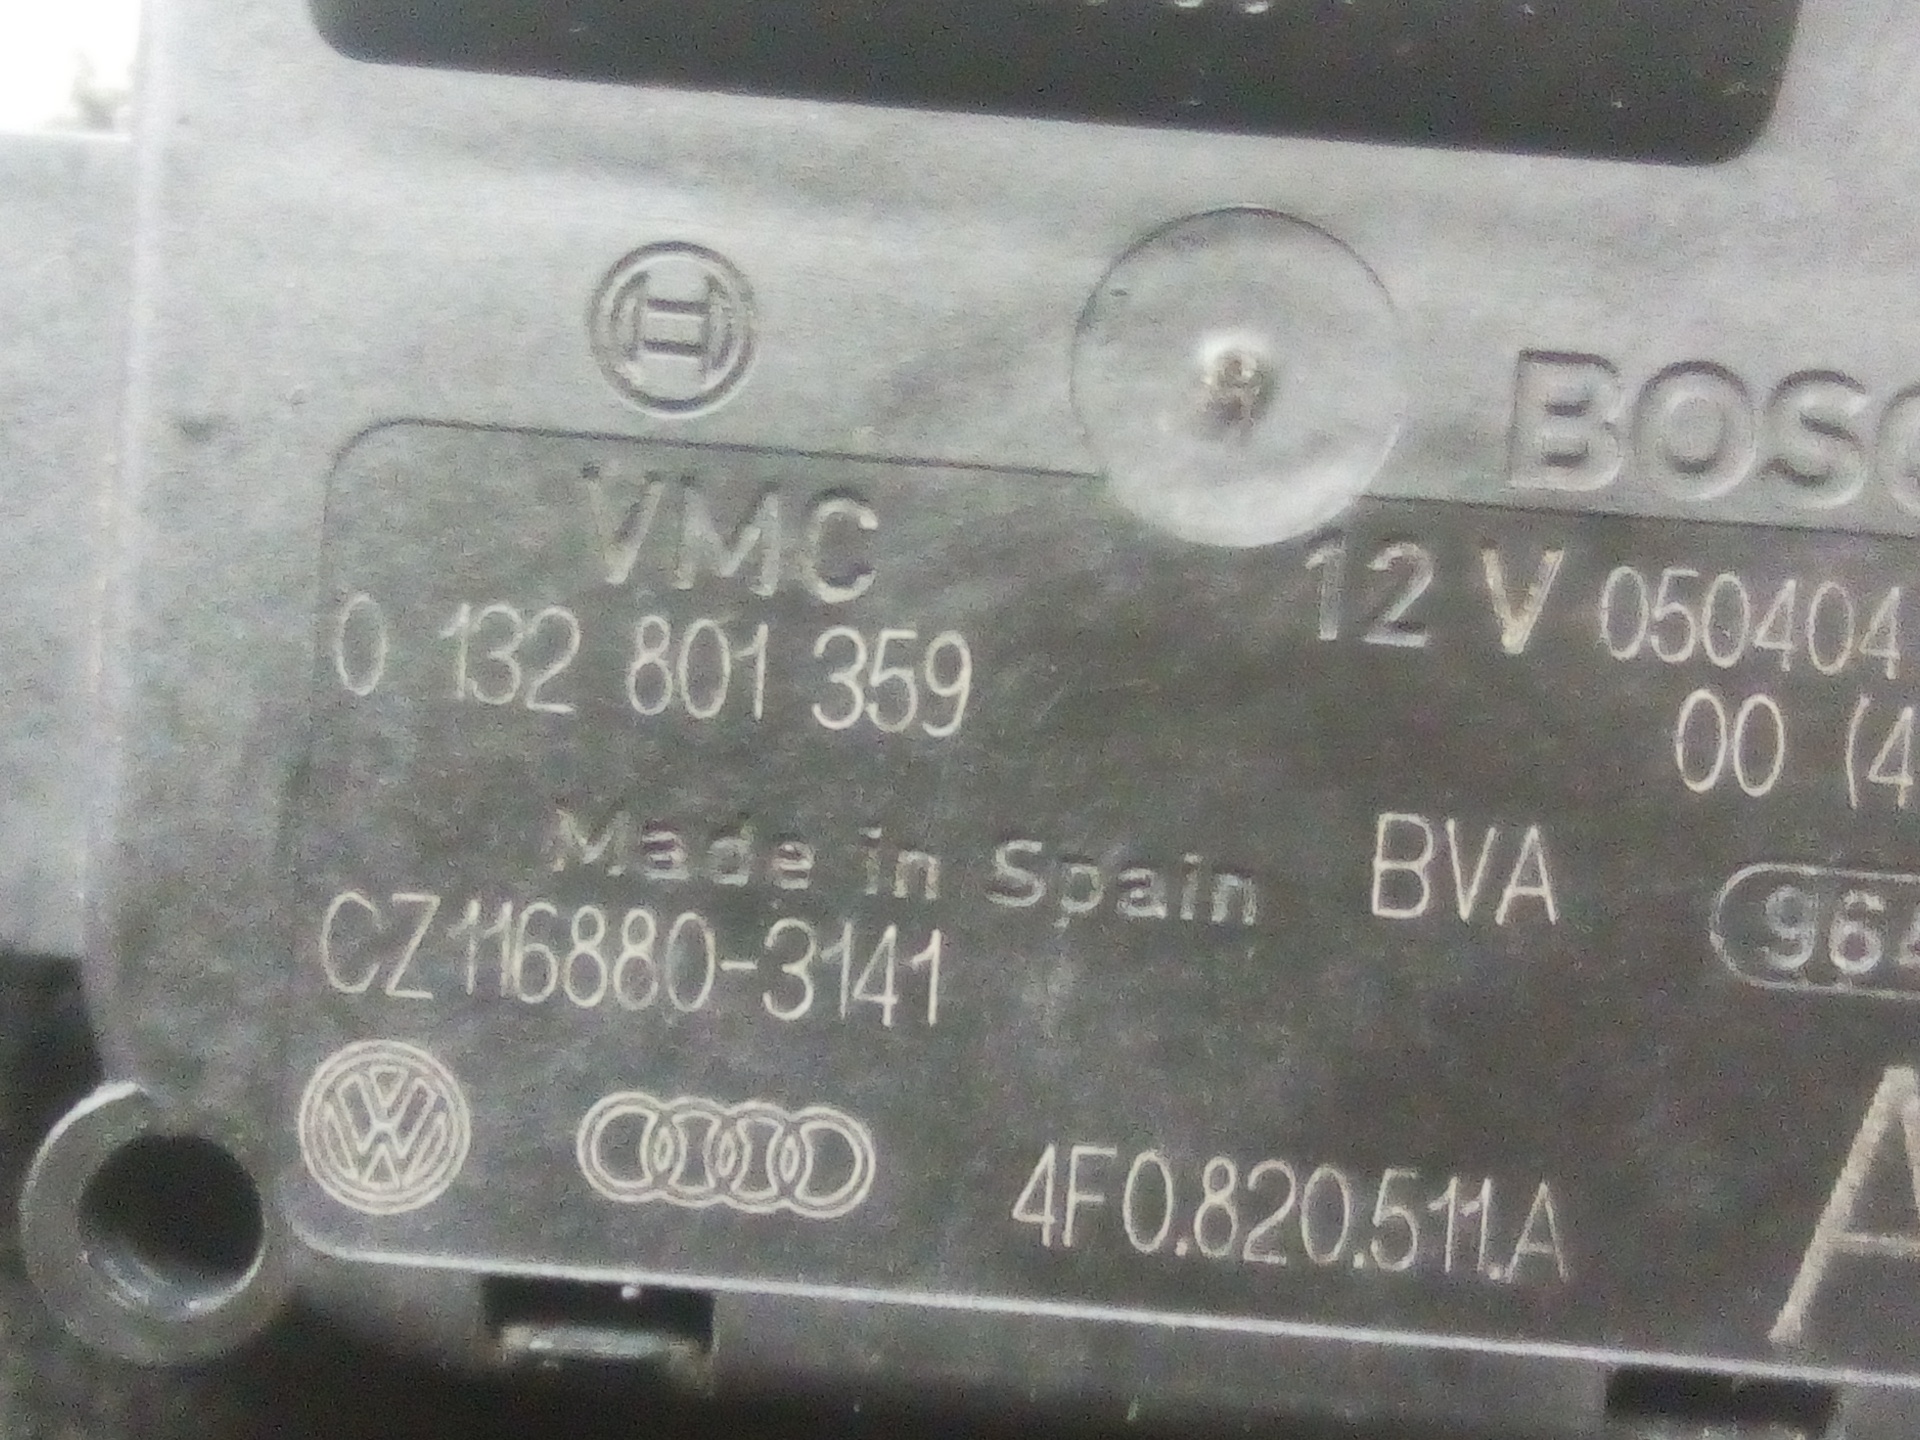 AUDI A6 C6/4F (2004-2011) Нагревательный вентиляторный моторчик салона 0132801359 25602913